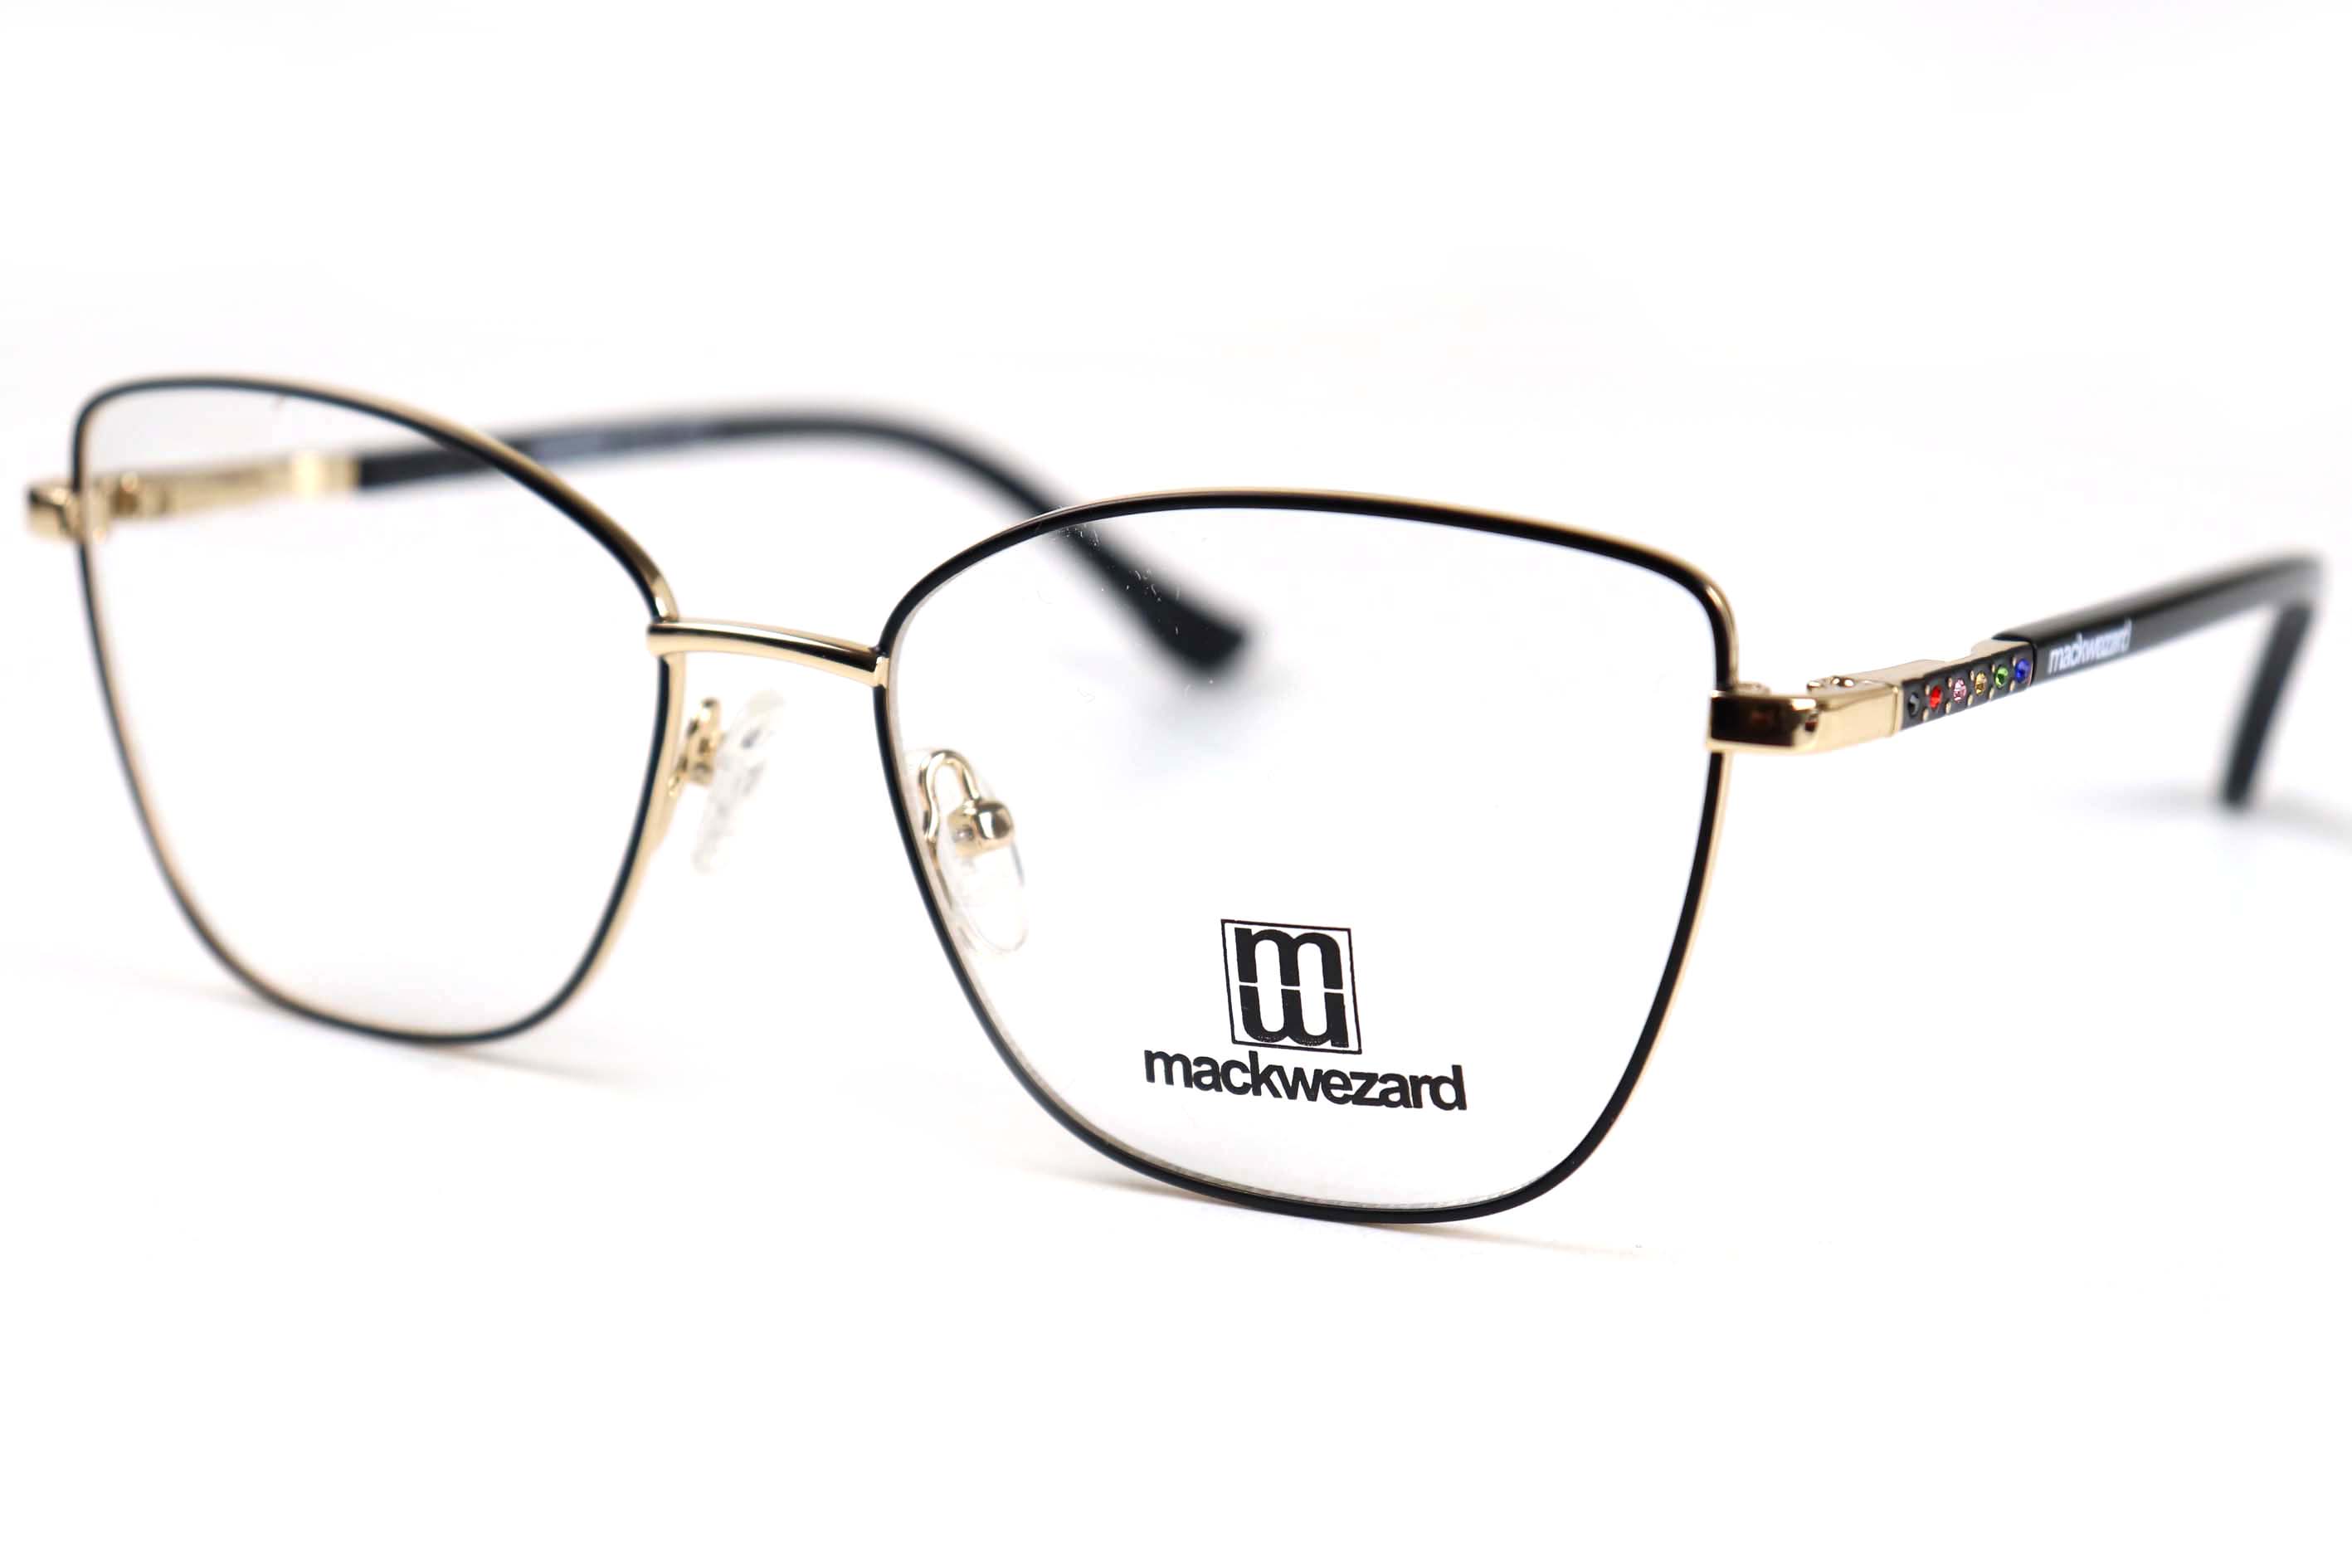 Mackwezard Eyeglasses- 1001-C2-54-18-140